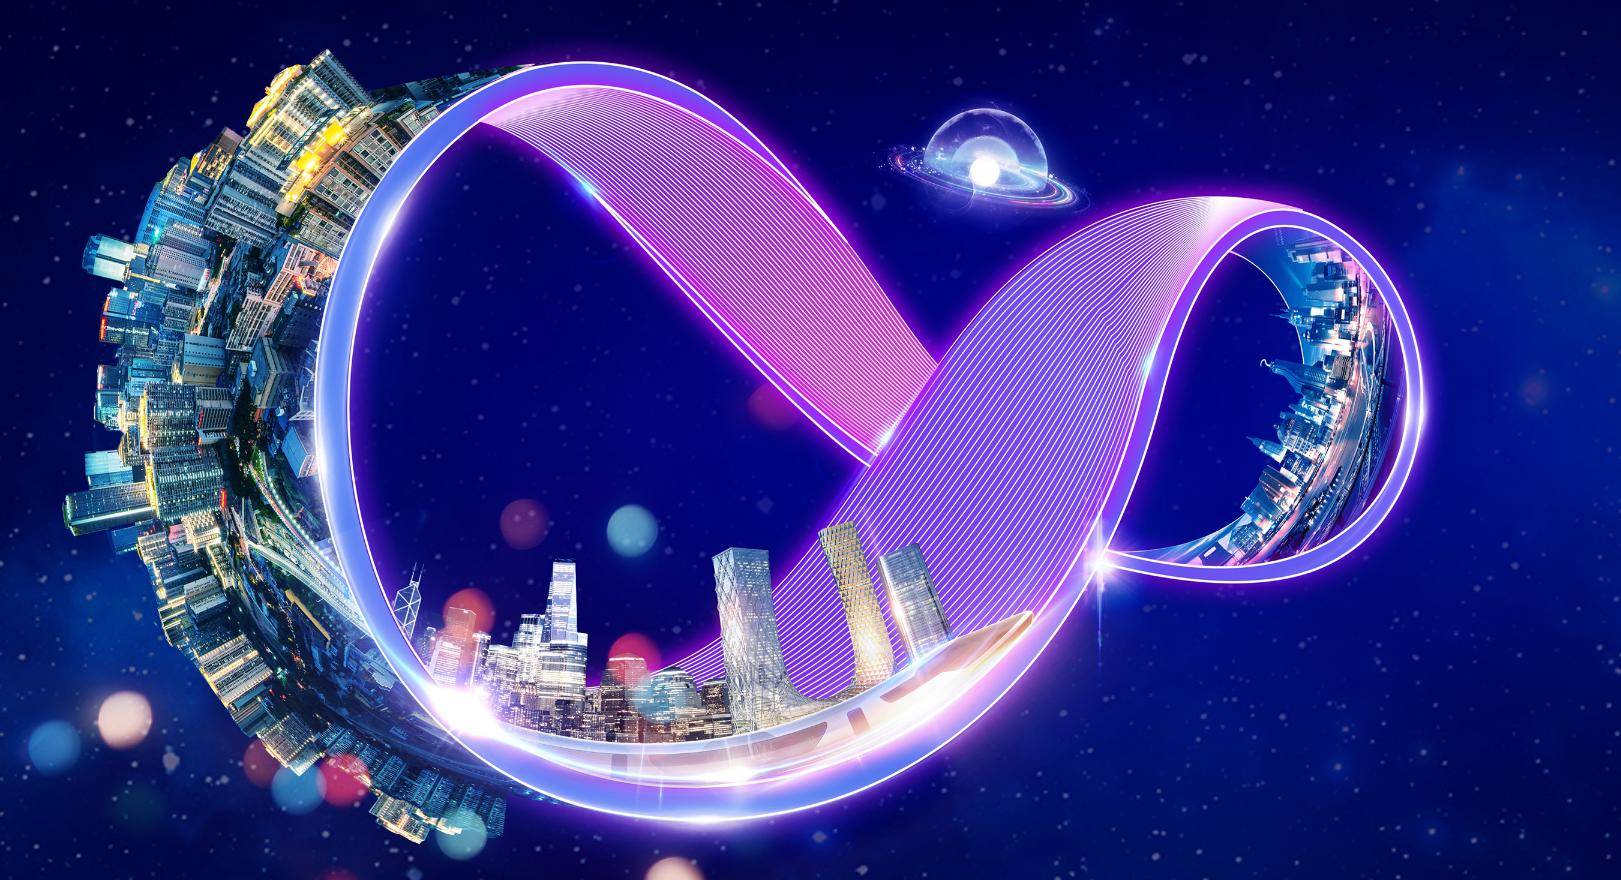 这是一张展示无限循环符号的科幻风格图片，符号内部有城市景观，背景是星空和星系，整体色调以紫色和蓝色为主。